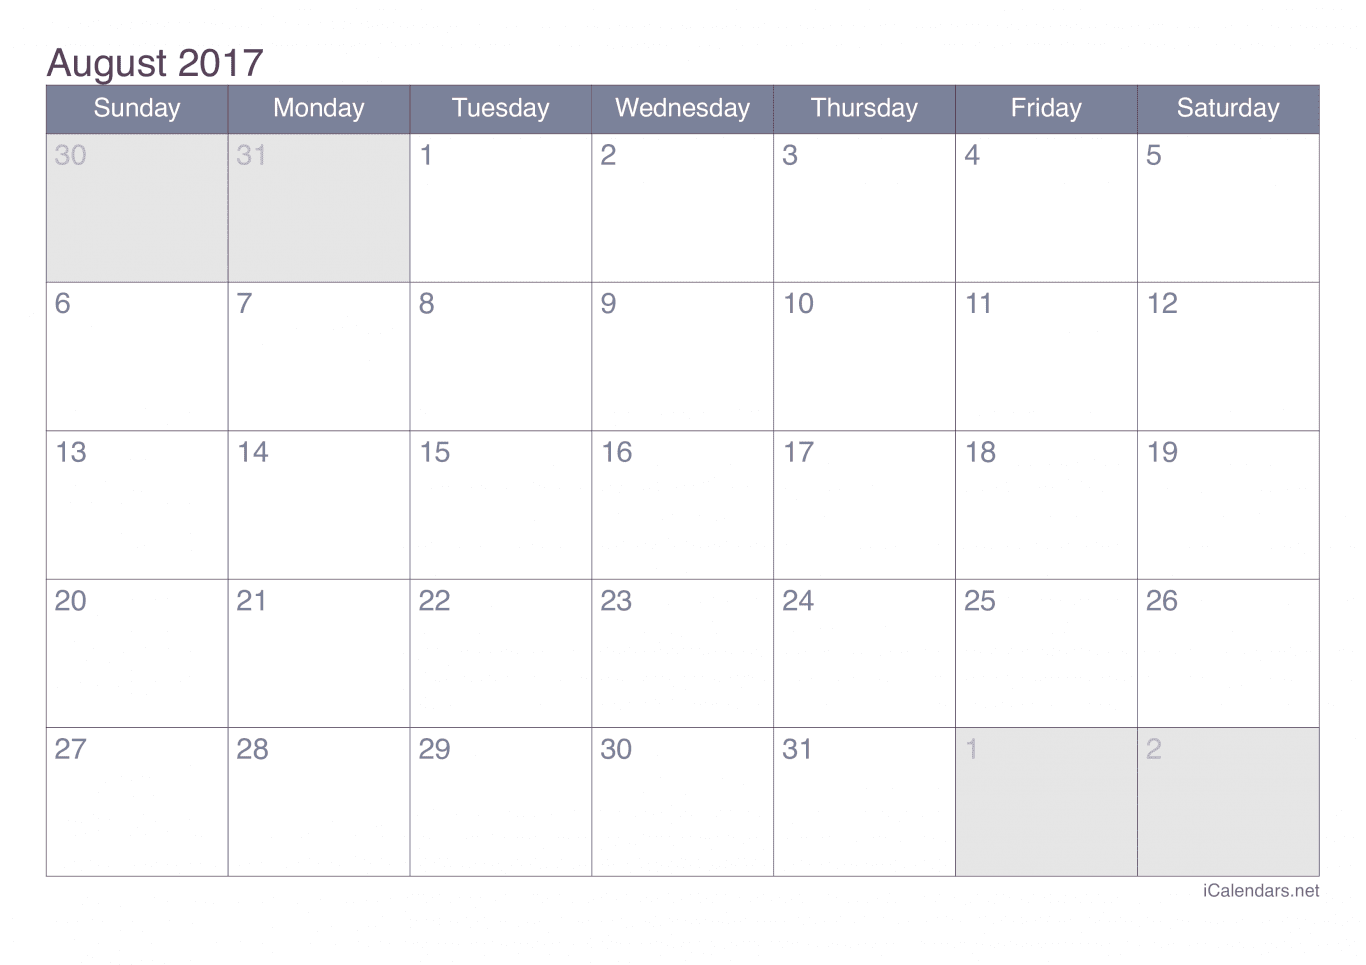 2017 August Calendar - Office